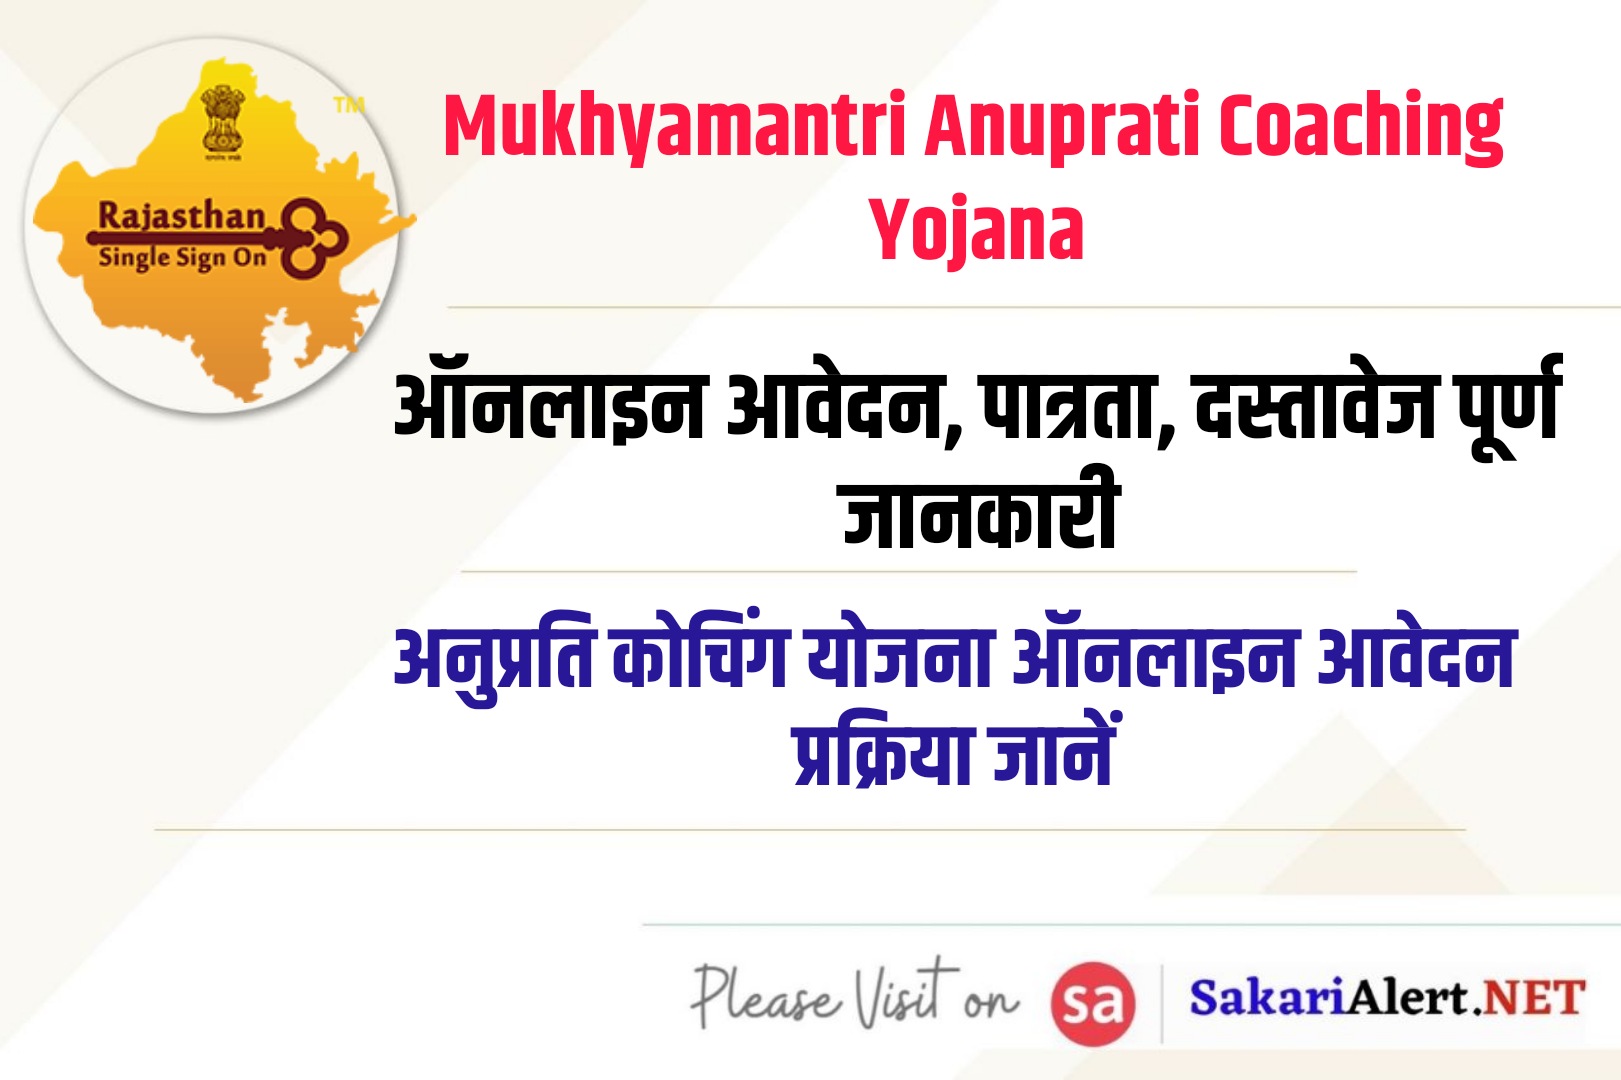 Mukhyamantri Anuprati Coaching Yojana